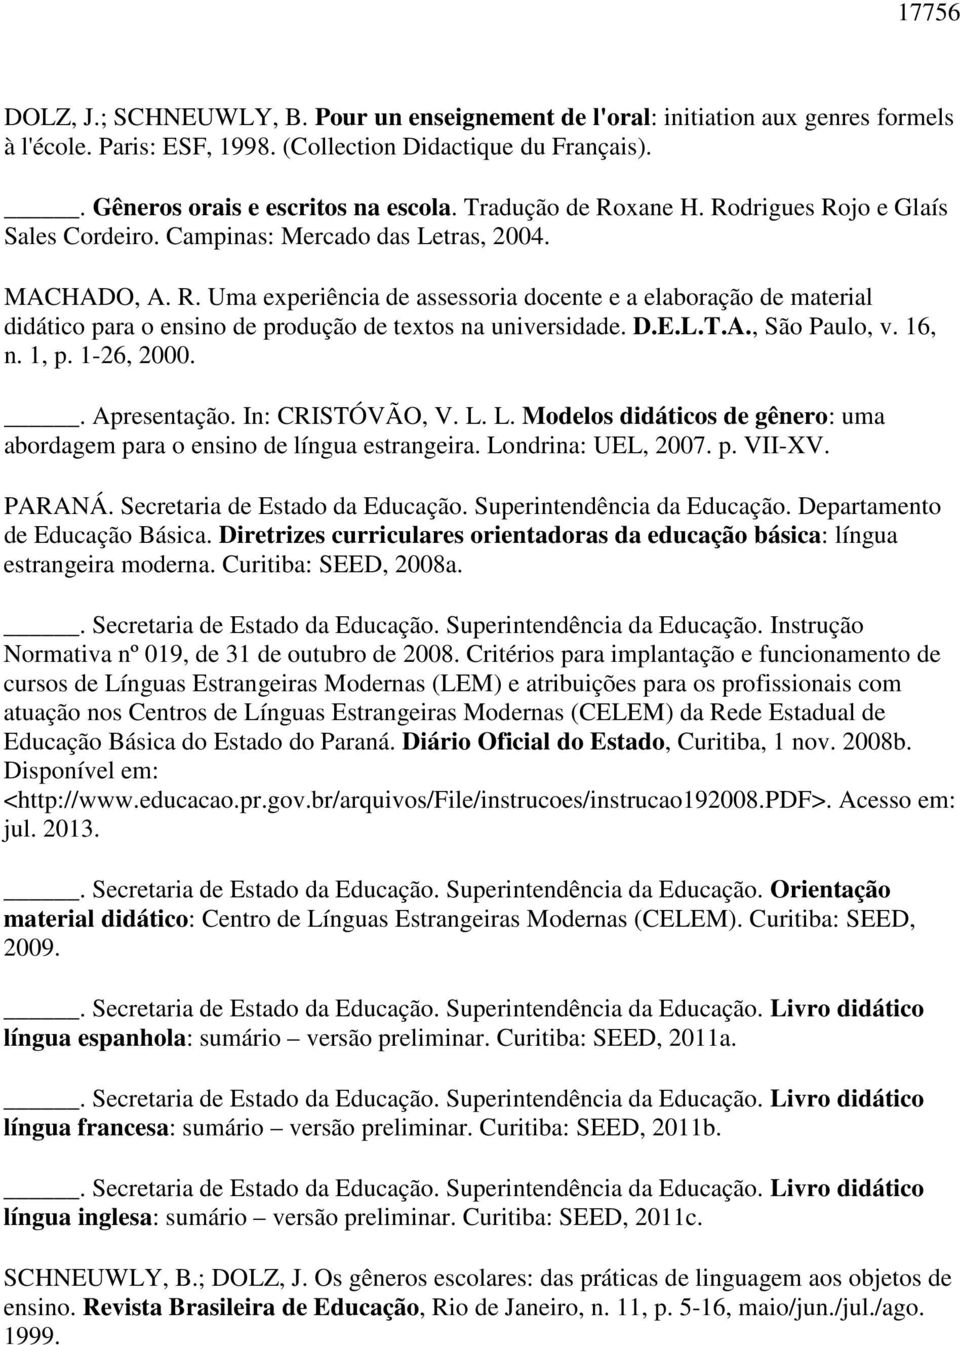 D.E.L.T.A., São Paulo, v. 16, n. 1, p. 1-26, 2000.. Apresentação. In: CRISTÓVÃO, V. L. L. Modelos didáticos de gênero: uma abordagem para o ensino de língua estrangeira. Londrina: UEL, 2007. p. VII-XV.